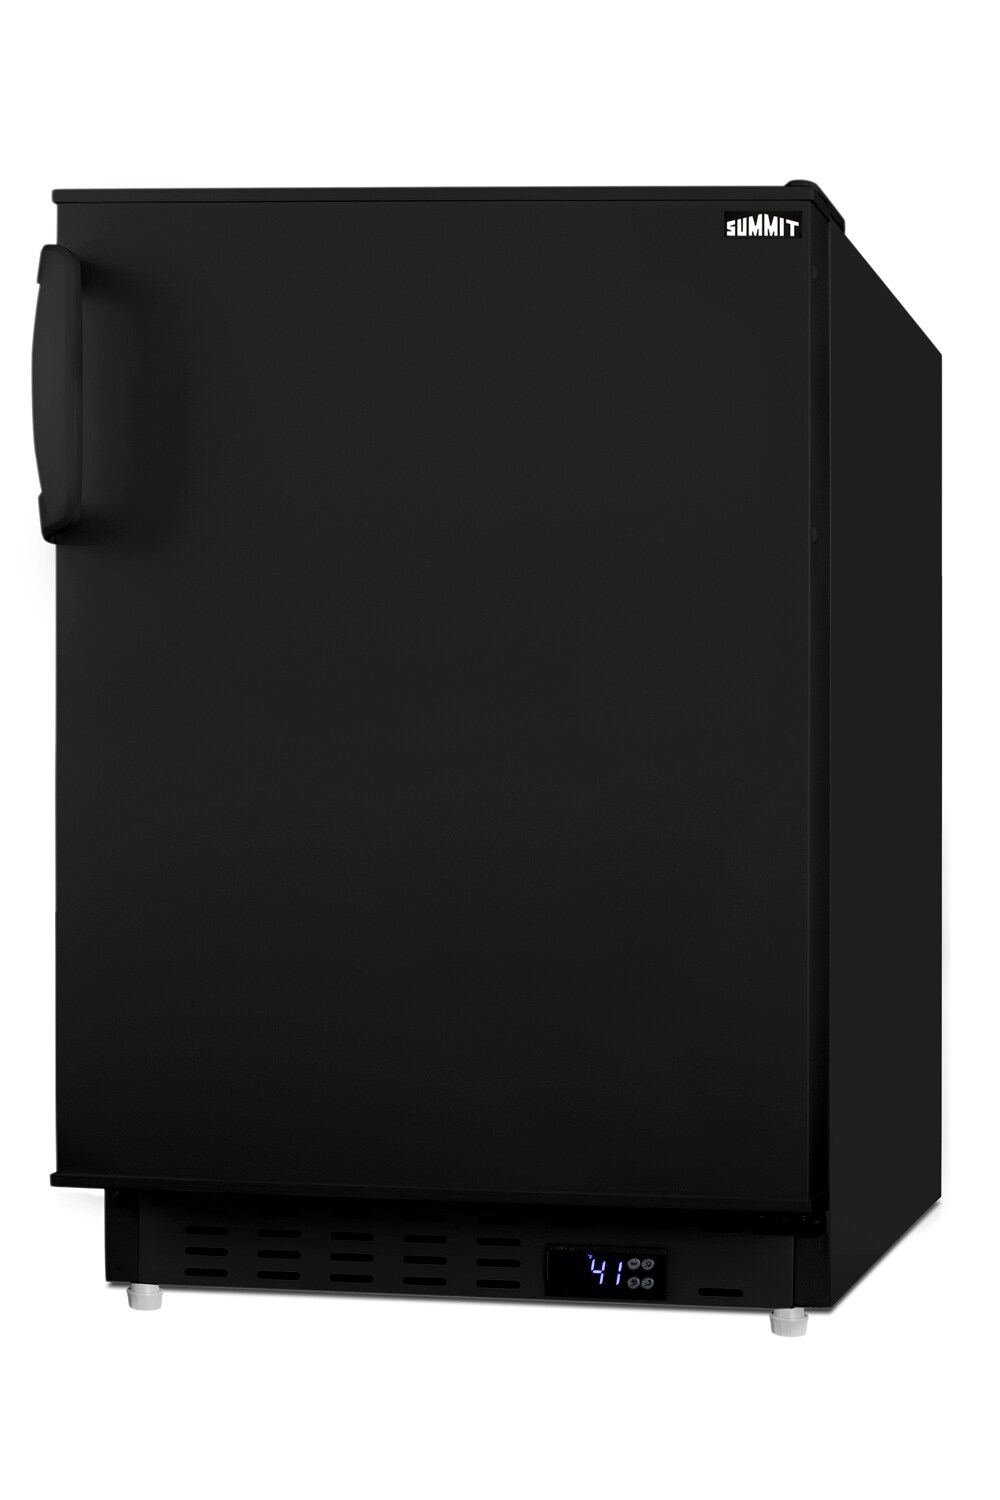 Summit Appliance Shallow Depth 3.1 cu. ft. Mini Fridge in Black